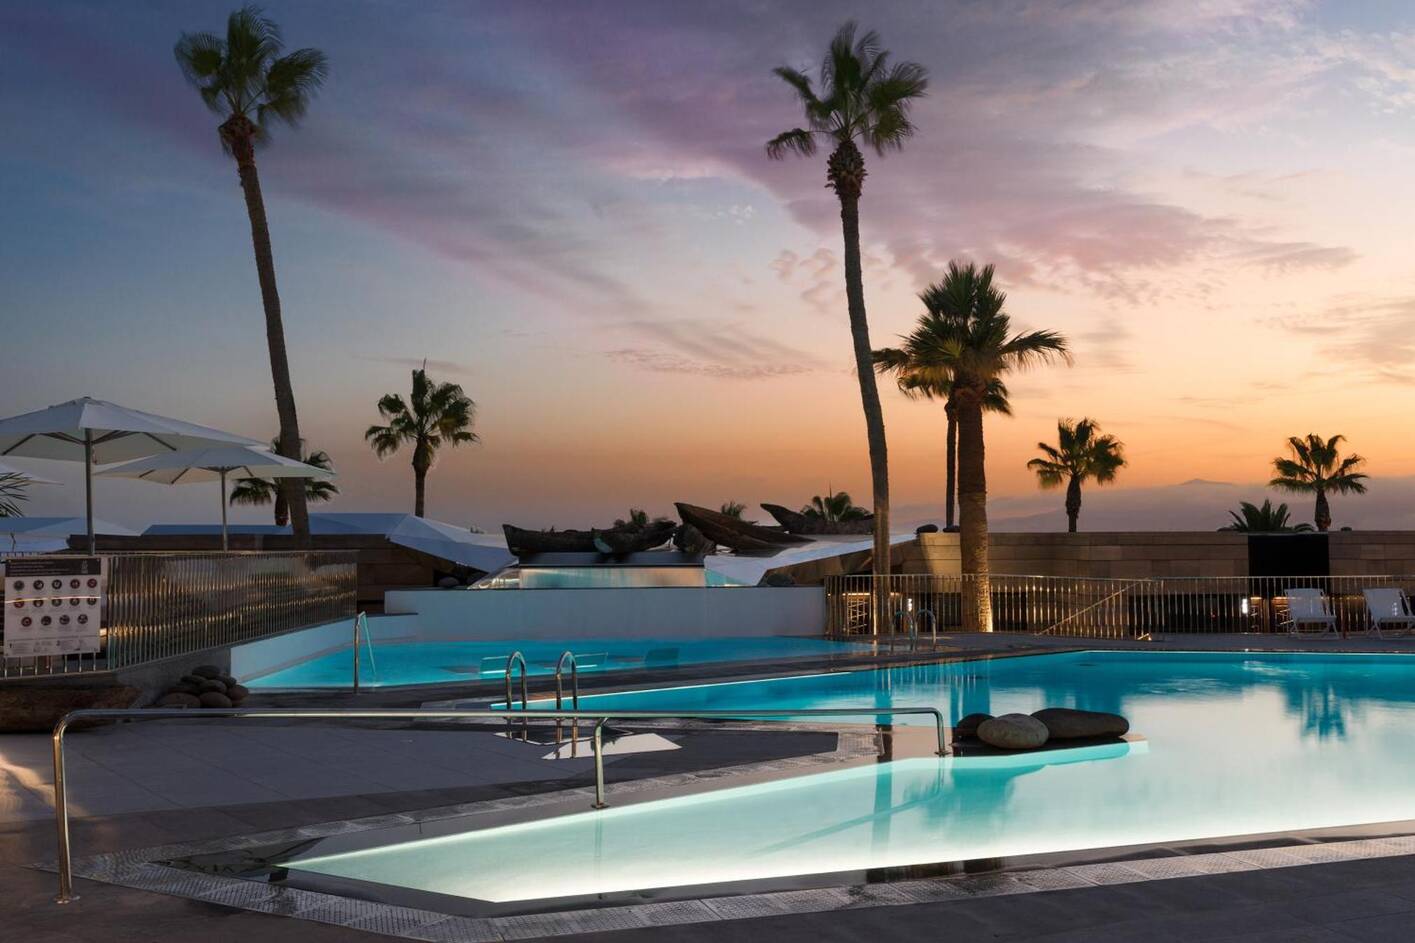 La Isla y el Mar, 5 star luxury hotels in lanzarote